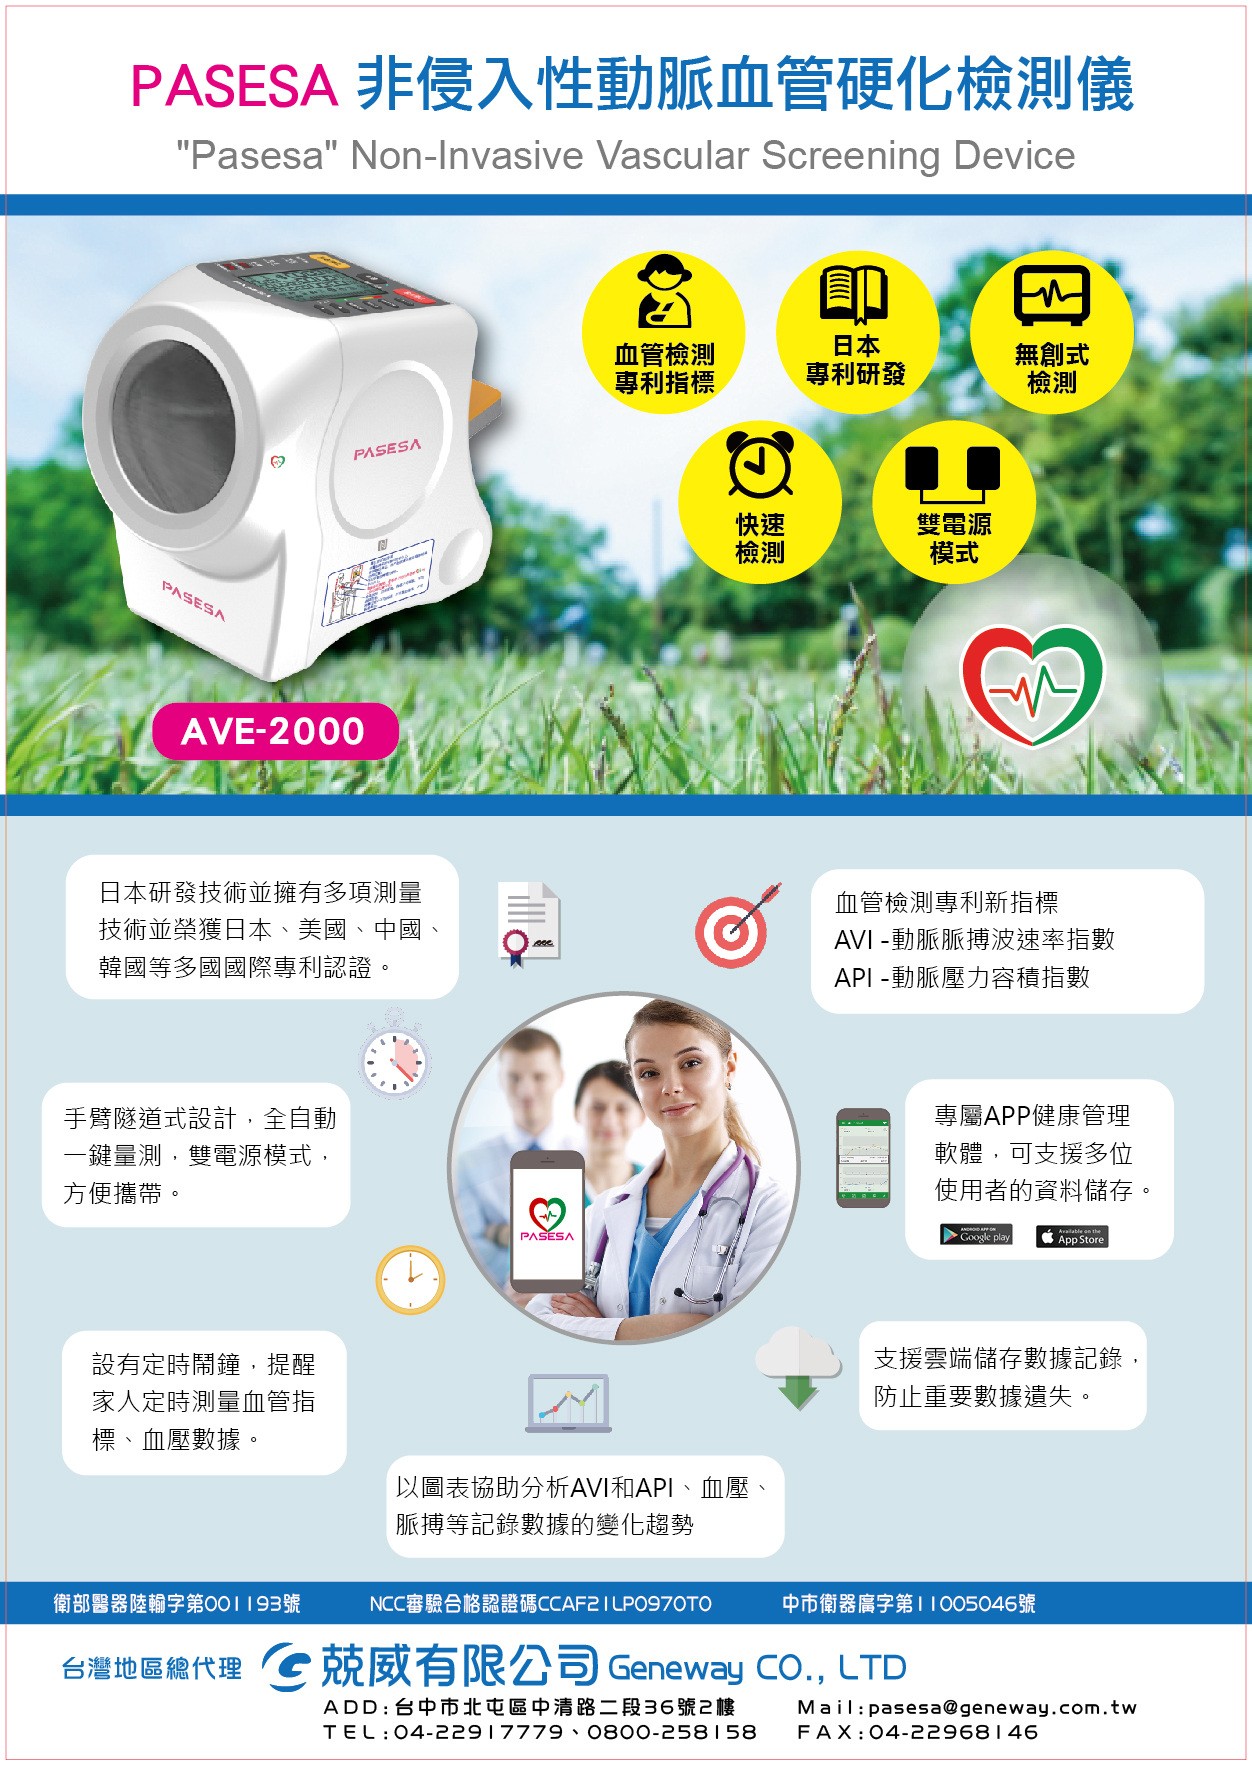 台灣國際醫療暨健康照護展-產品資訊-PASESA非侵入性動脈血管硬化檢測儀